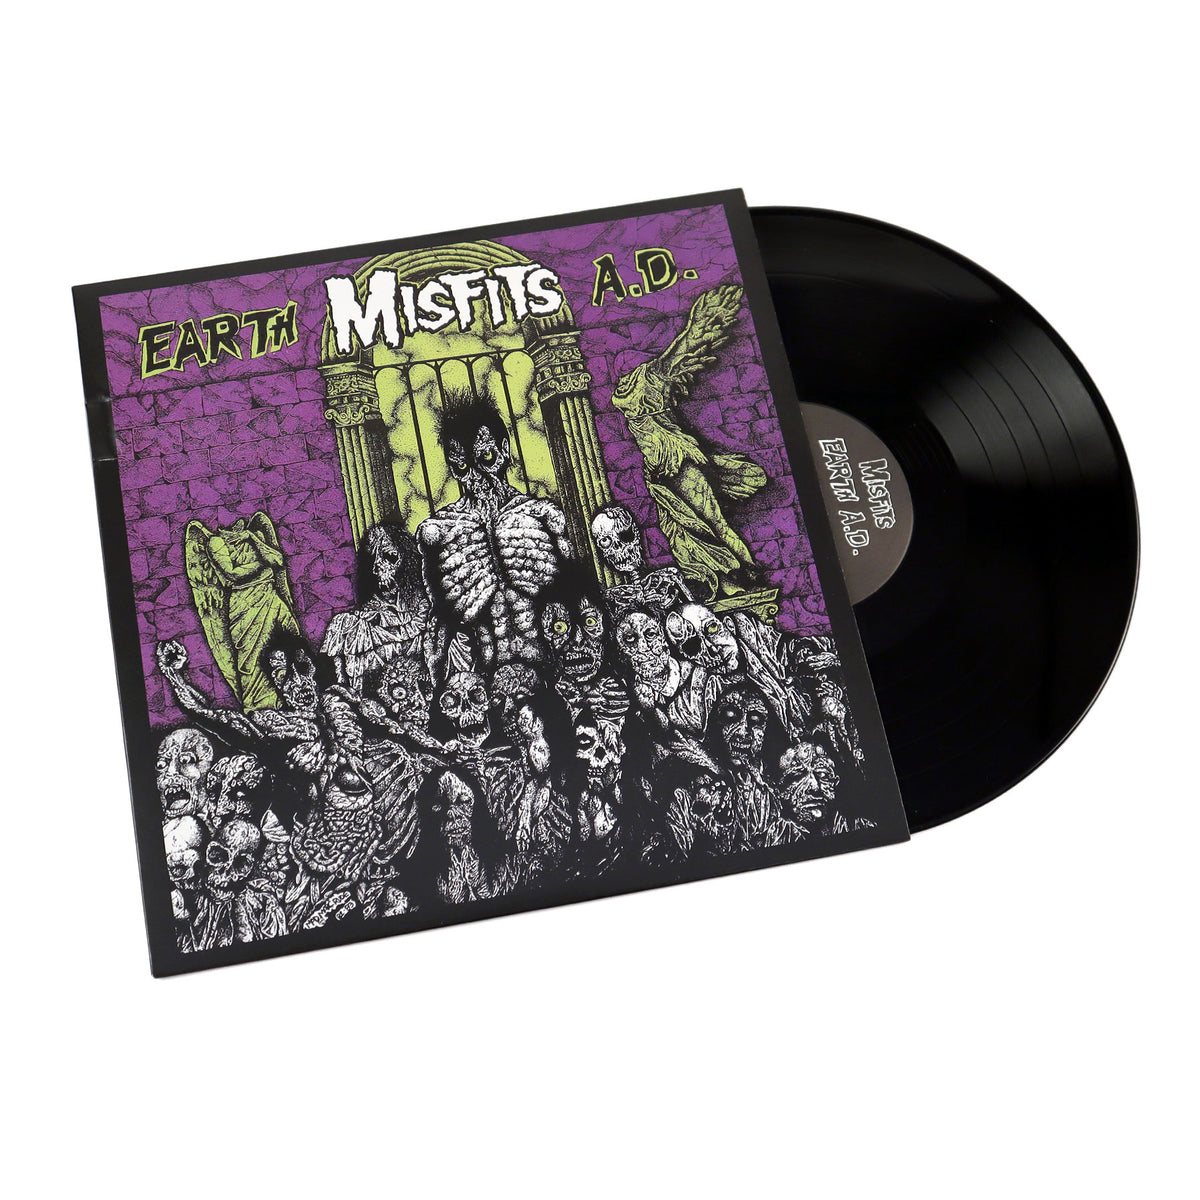 Misfits: Earth A.D. Vinyl LP